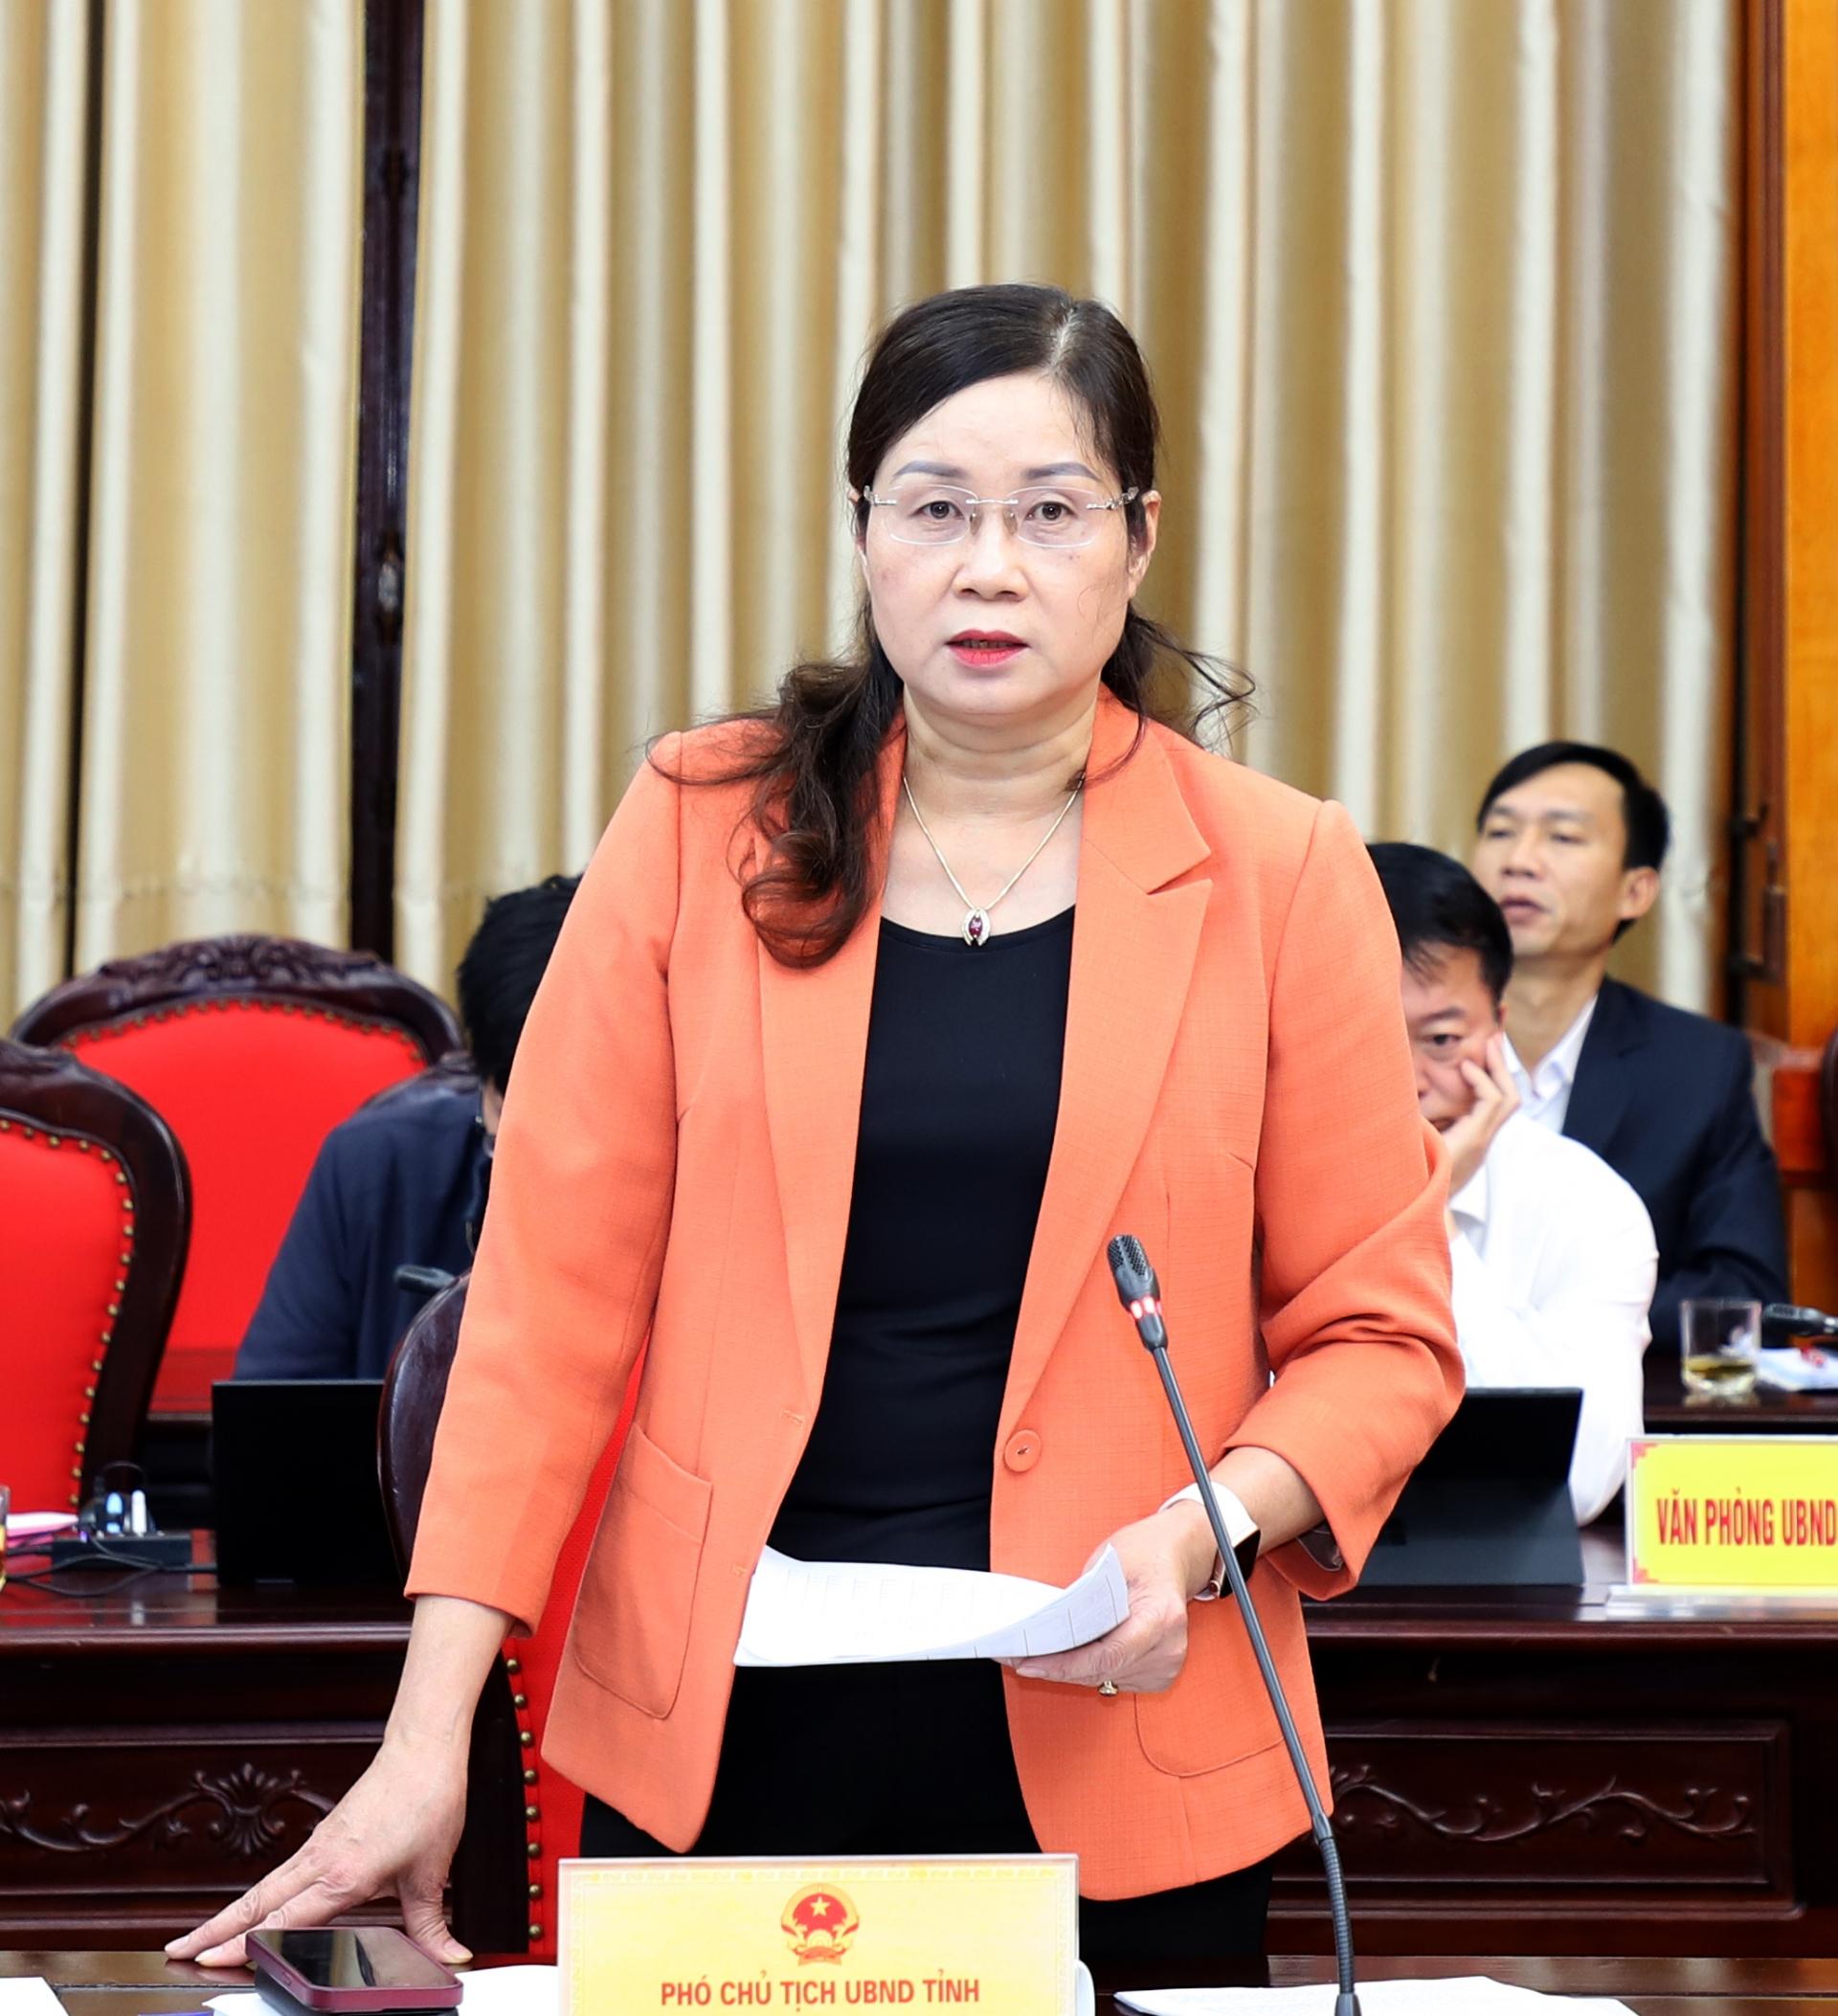 Phó Chủ tịch UBND tỉnh Hà Thị Minh Hạnh đề nghị các ngành, địa phương đẩy mạnh cải cách thủ tục hành chính, tập trung tháo gỡ khó khăn trong triển khai thủ tục đầu tư các dự án.